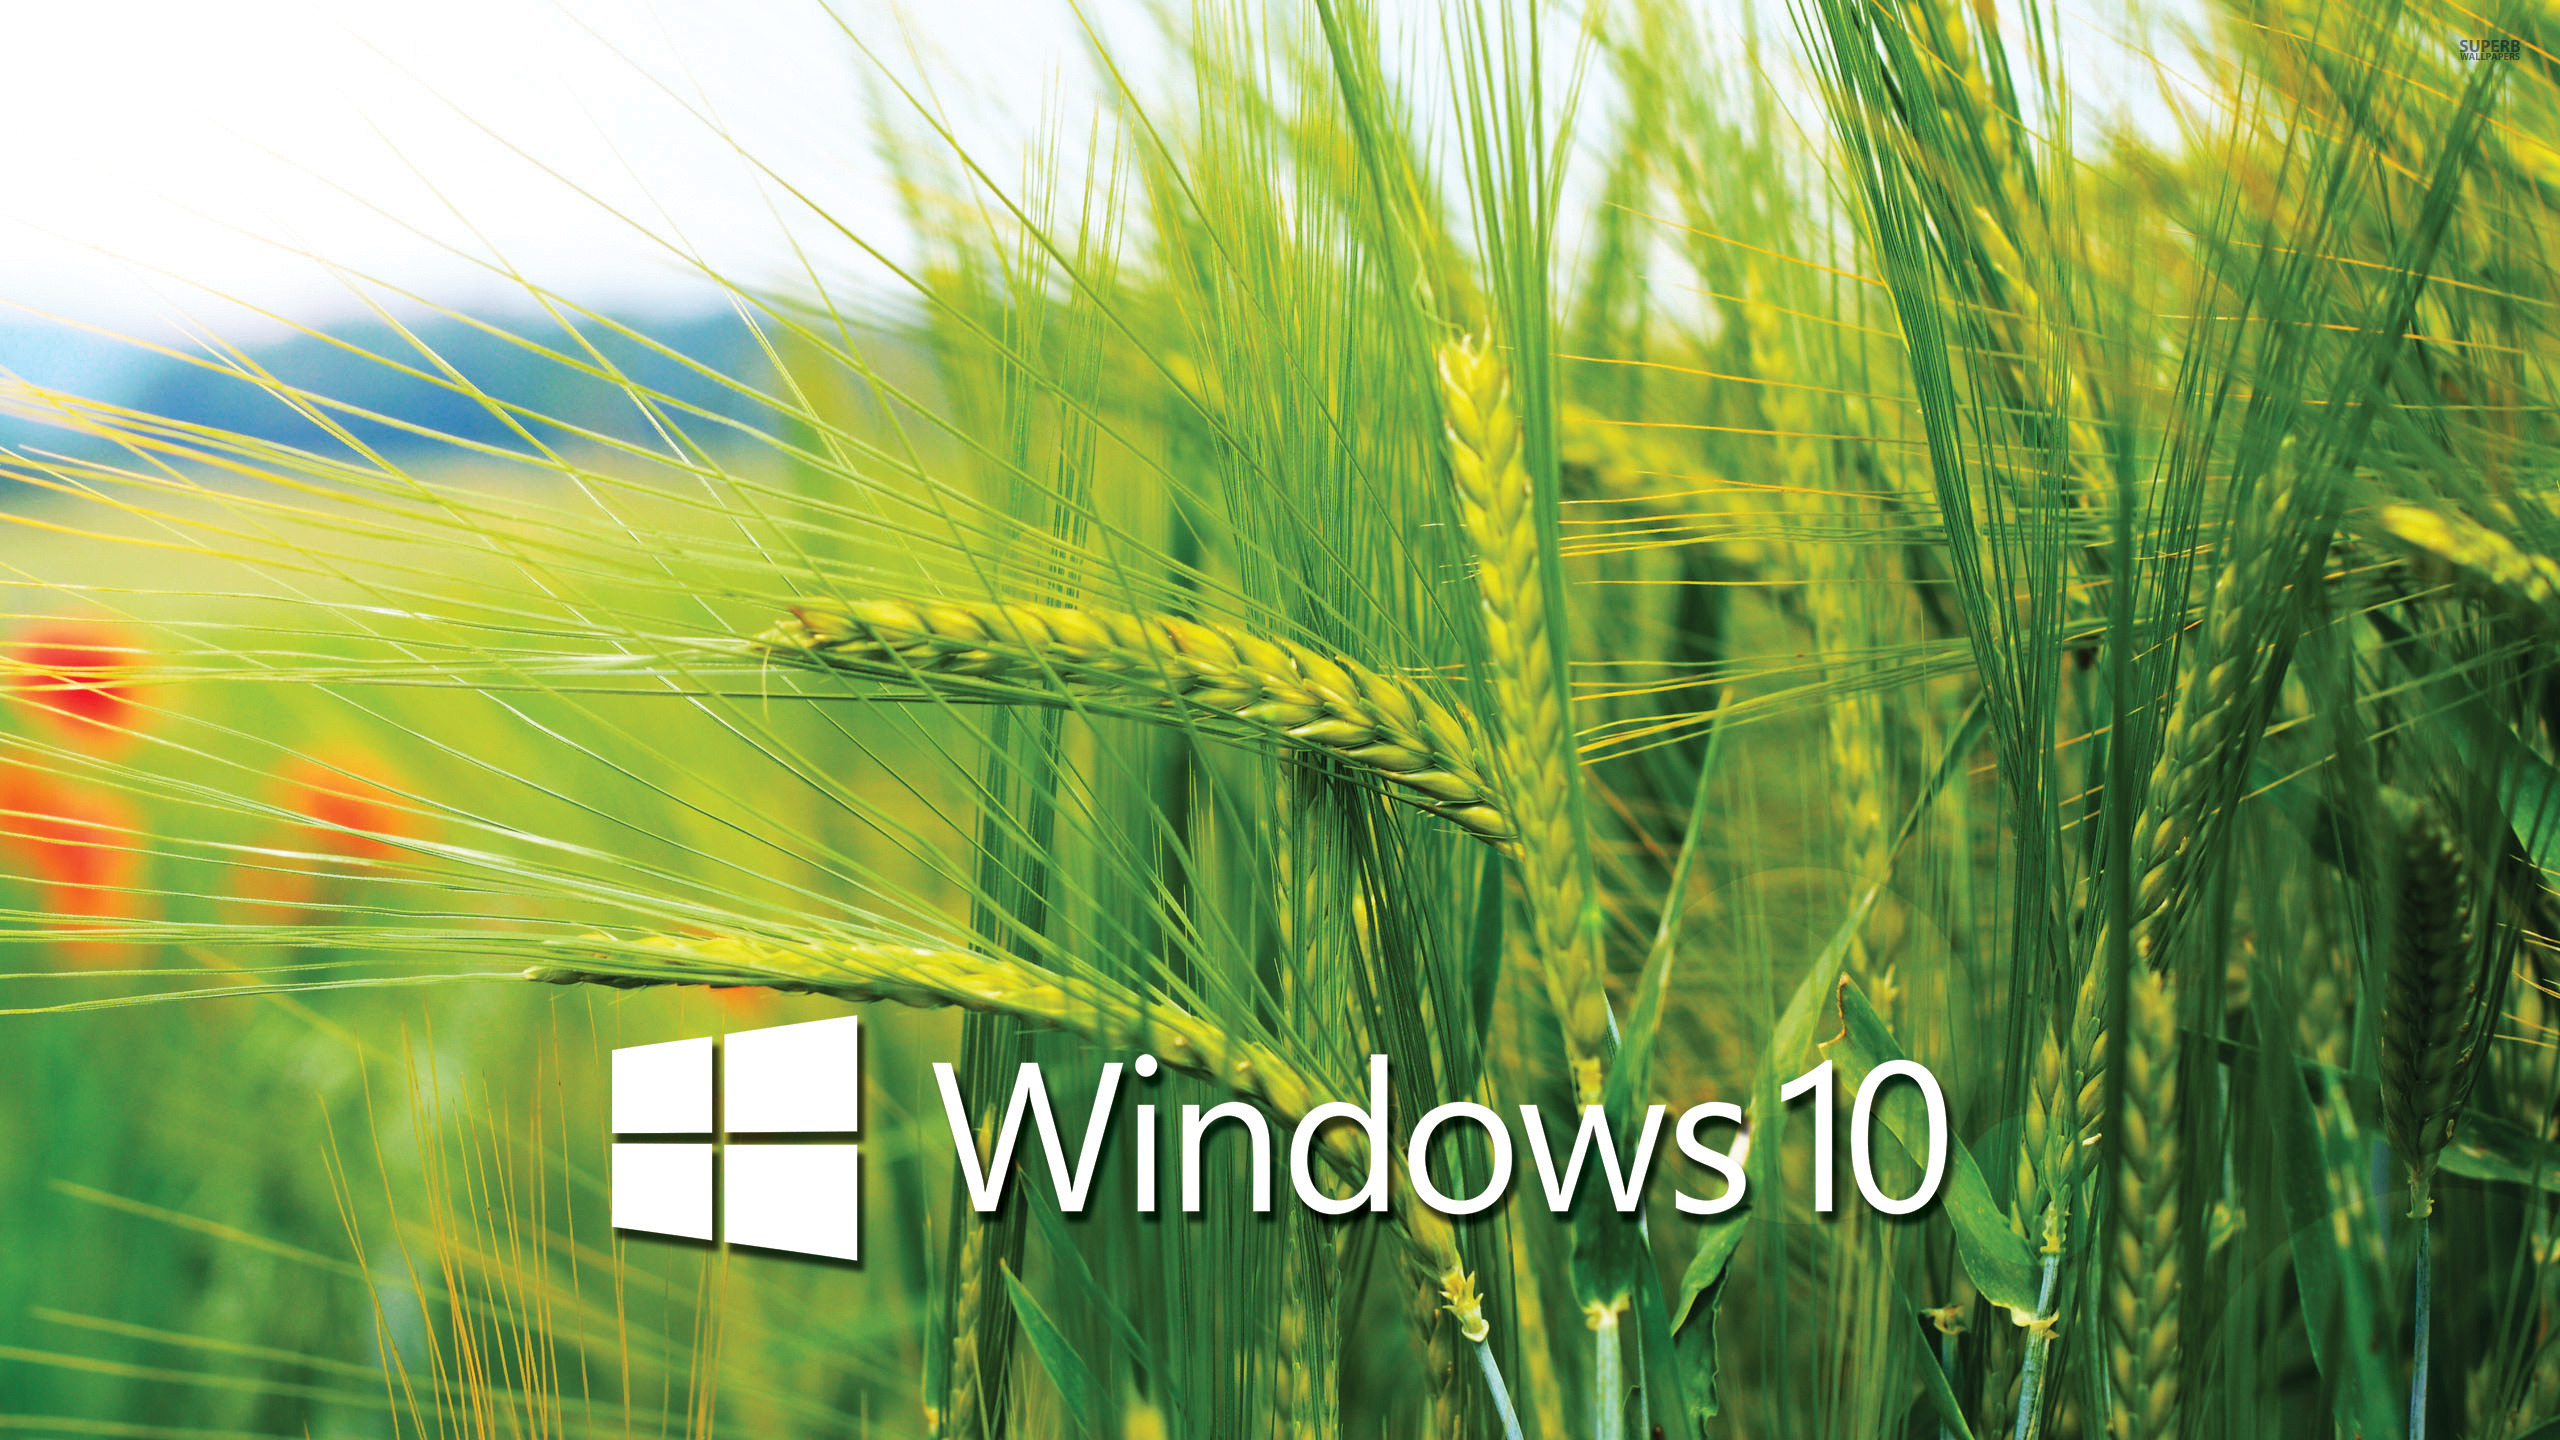 Windows 10 Wallpaper Hd 3d For Desktop Sweden SAVE 45   arriolatanzstudioat